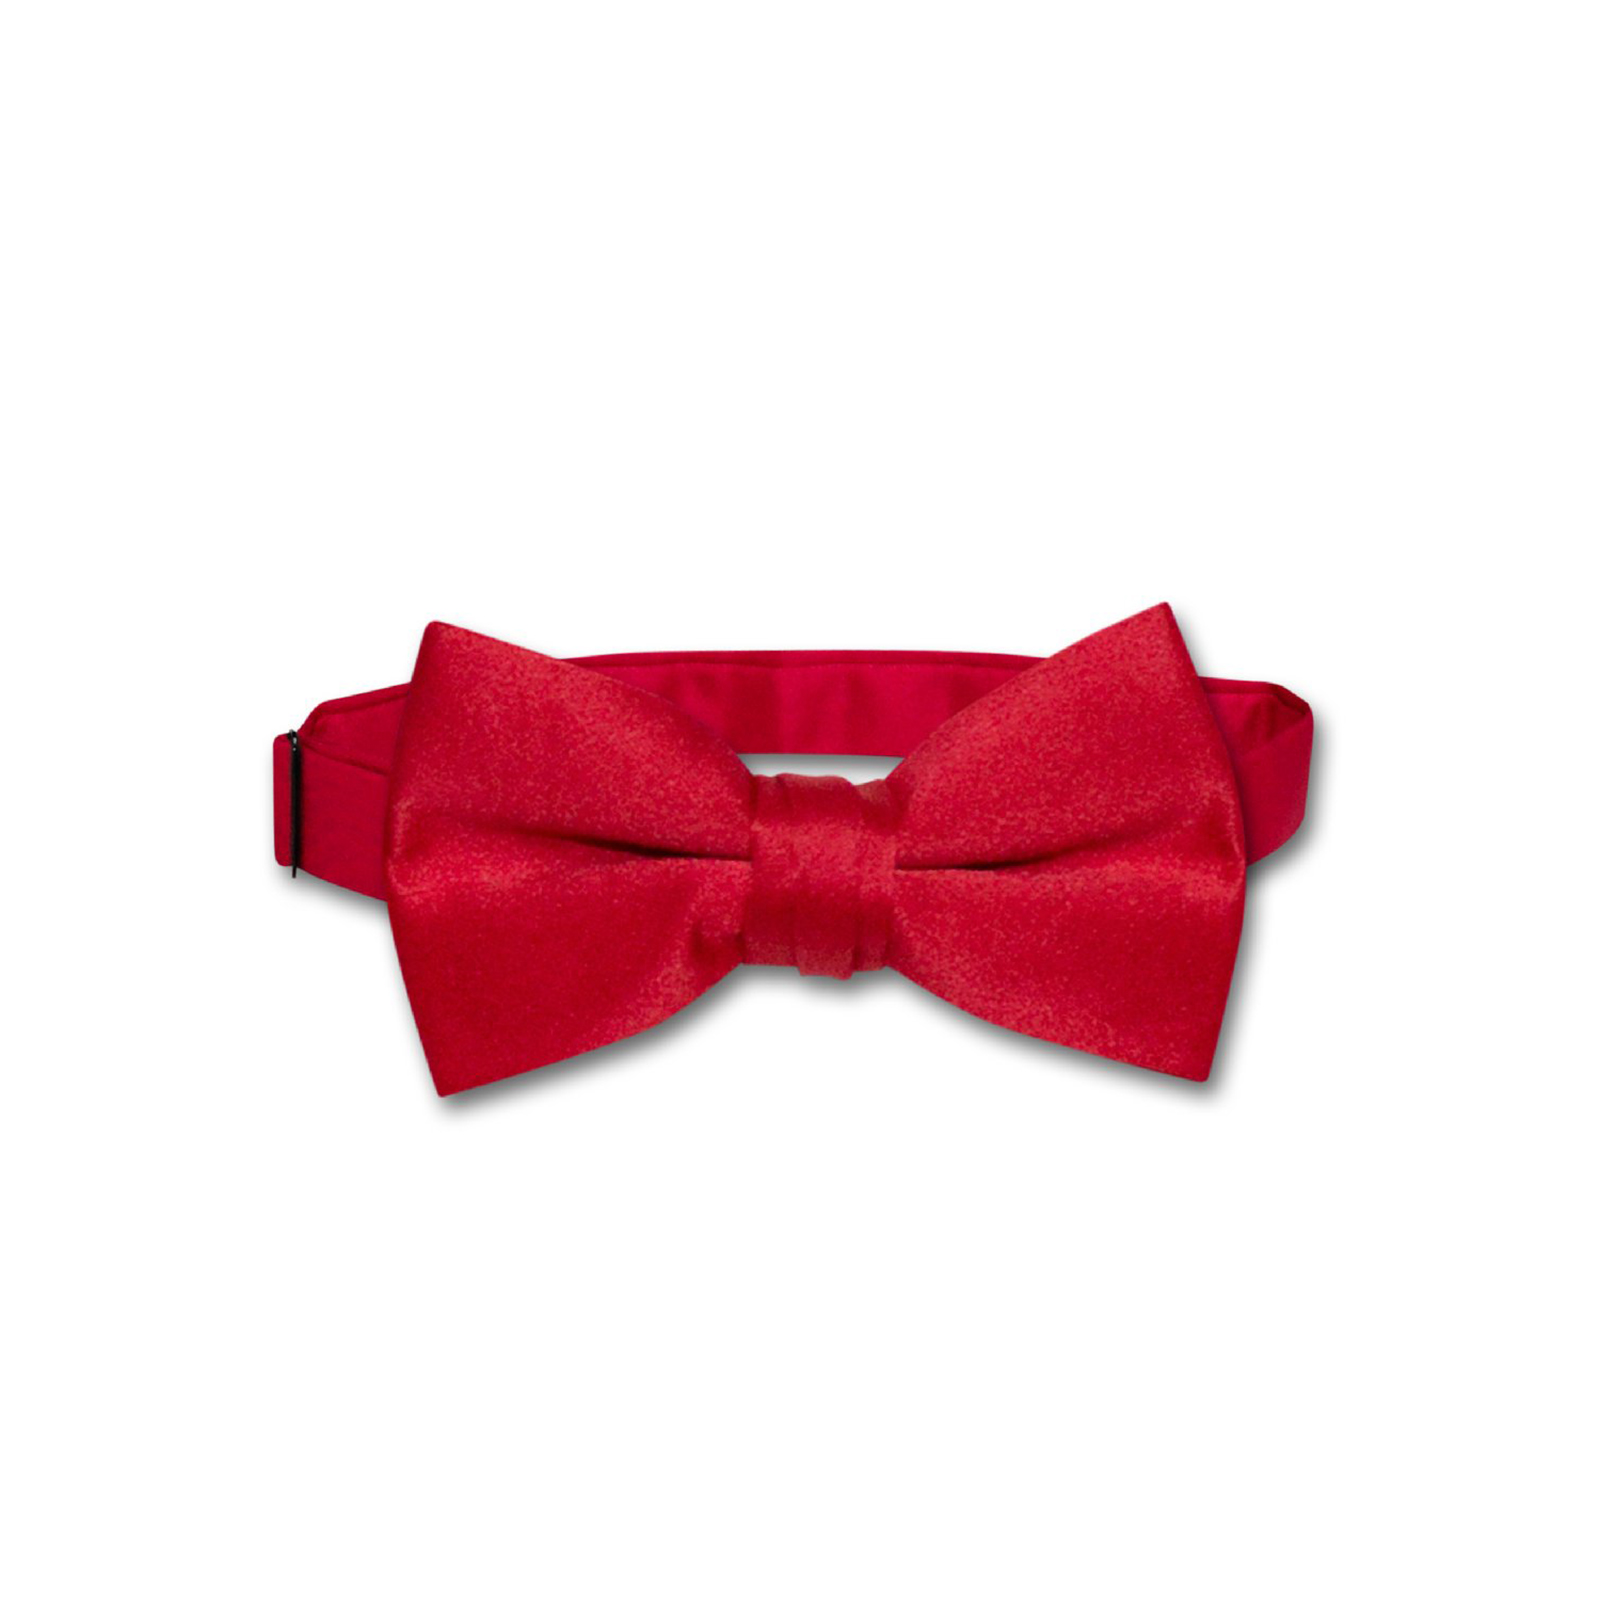 Vesuvio Napoli Youth's Solid Bow Tie - Red